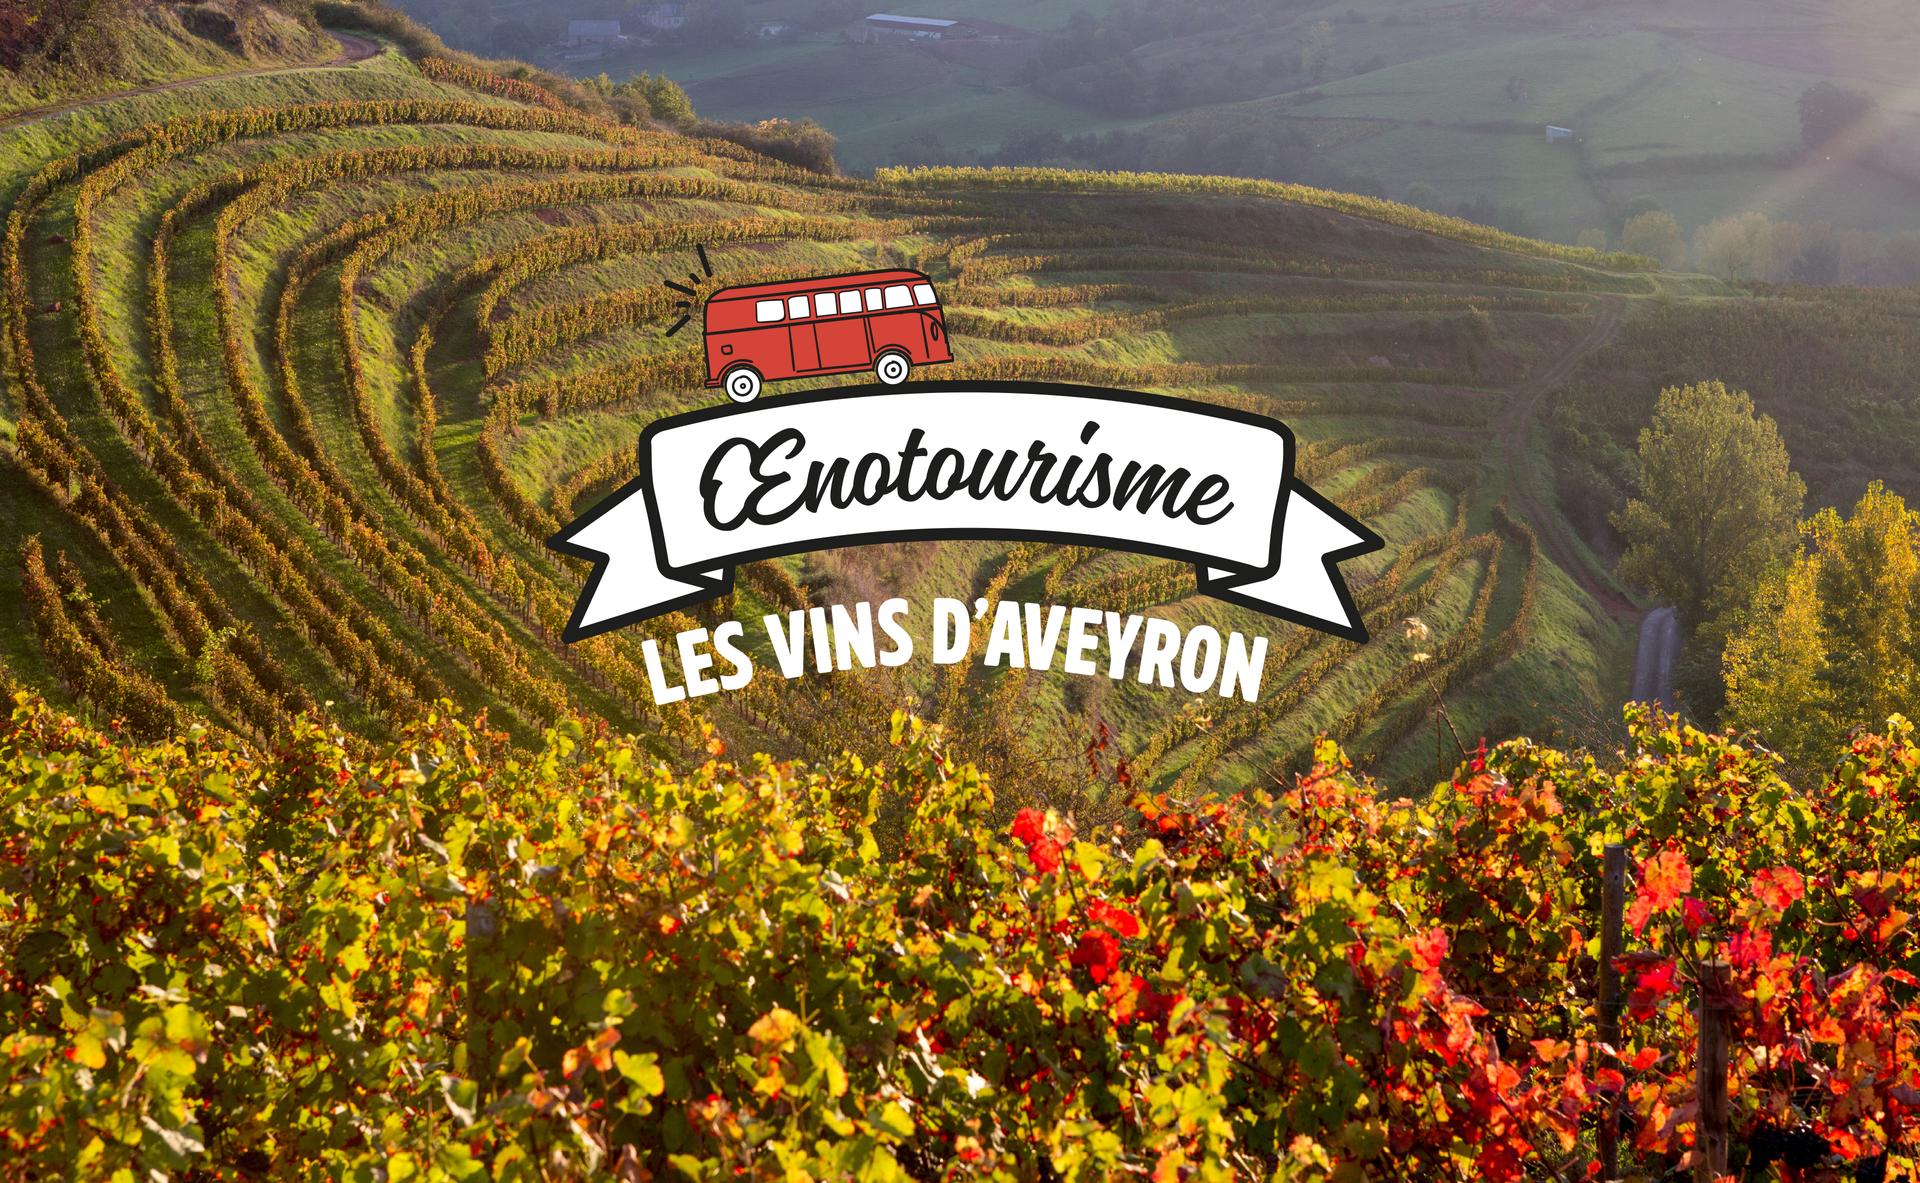 Les vins d’Aveyron